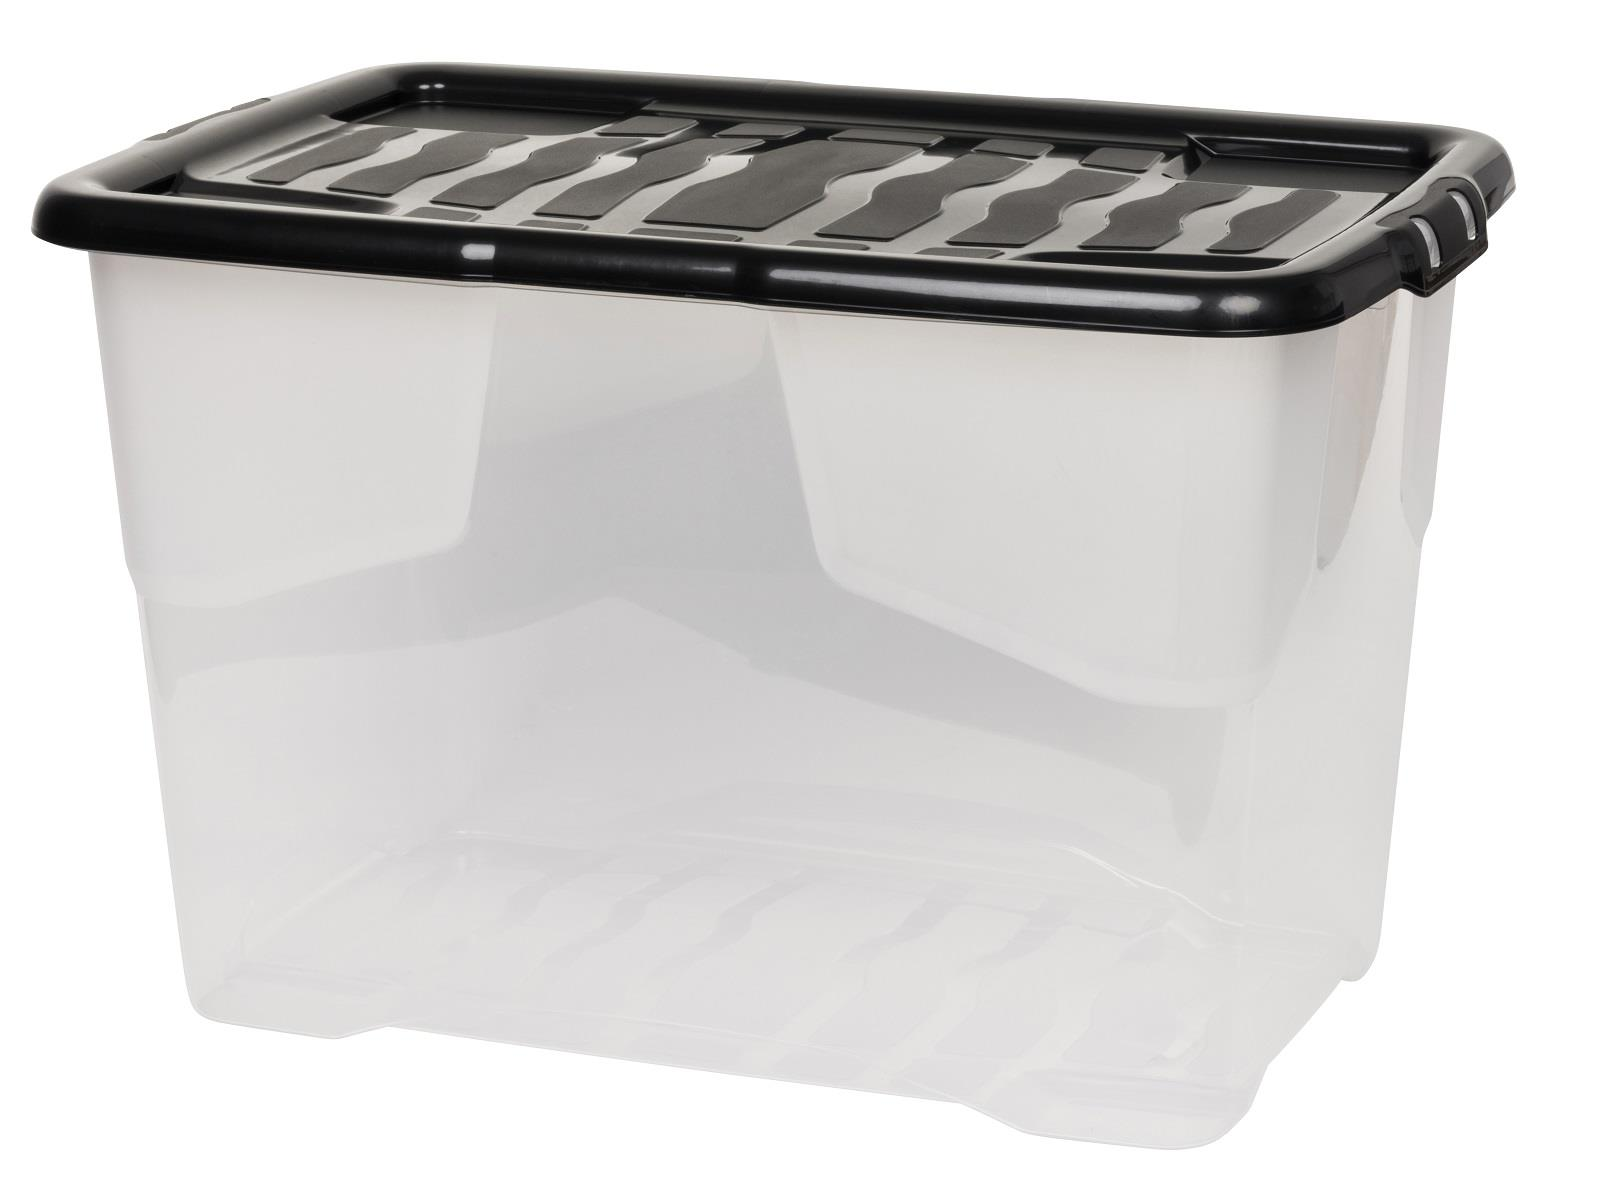 CUR BOX 65 Robuste Aufbewahrungsbox der Curve -Serie aus Kunststoff (PP). Ausgestattet mit einem transparentem Korpus und einem Deckel in dunklem Anthrazit in leicht glänzender Ausführung.